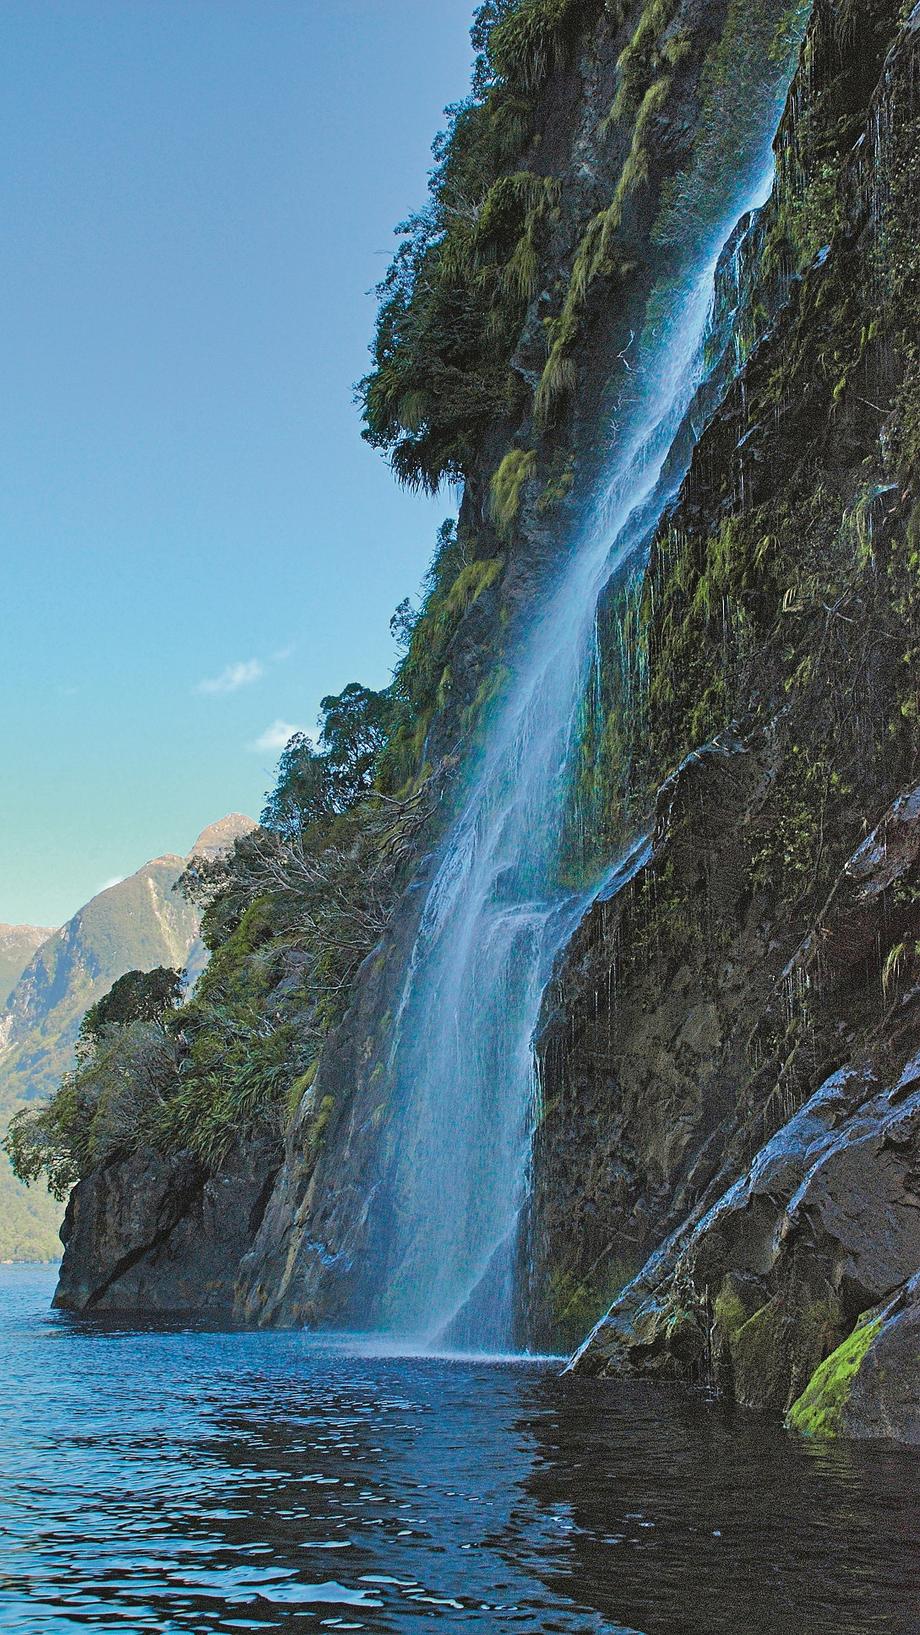 Browne Falls (836 m) w Fiordland National Park na Nowej Zelandii spływa dwoma strumieniami do fiordu Doubtful Sound. Zasilają go wody polodowcowego górskiego zbiornika Lake Browne